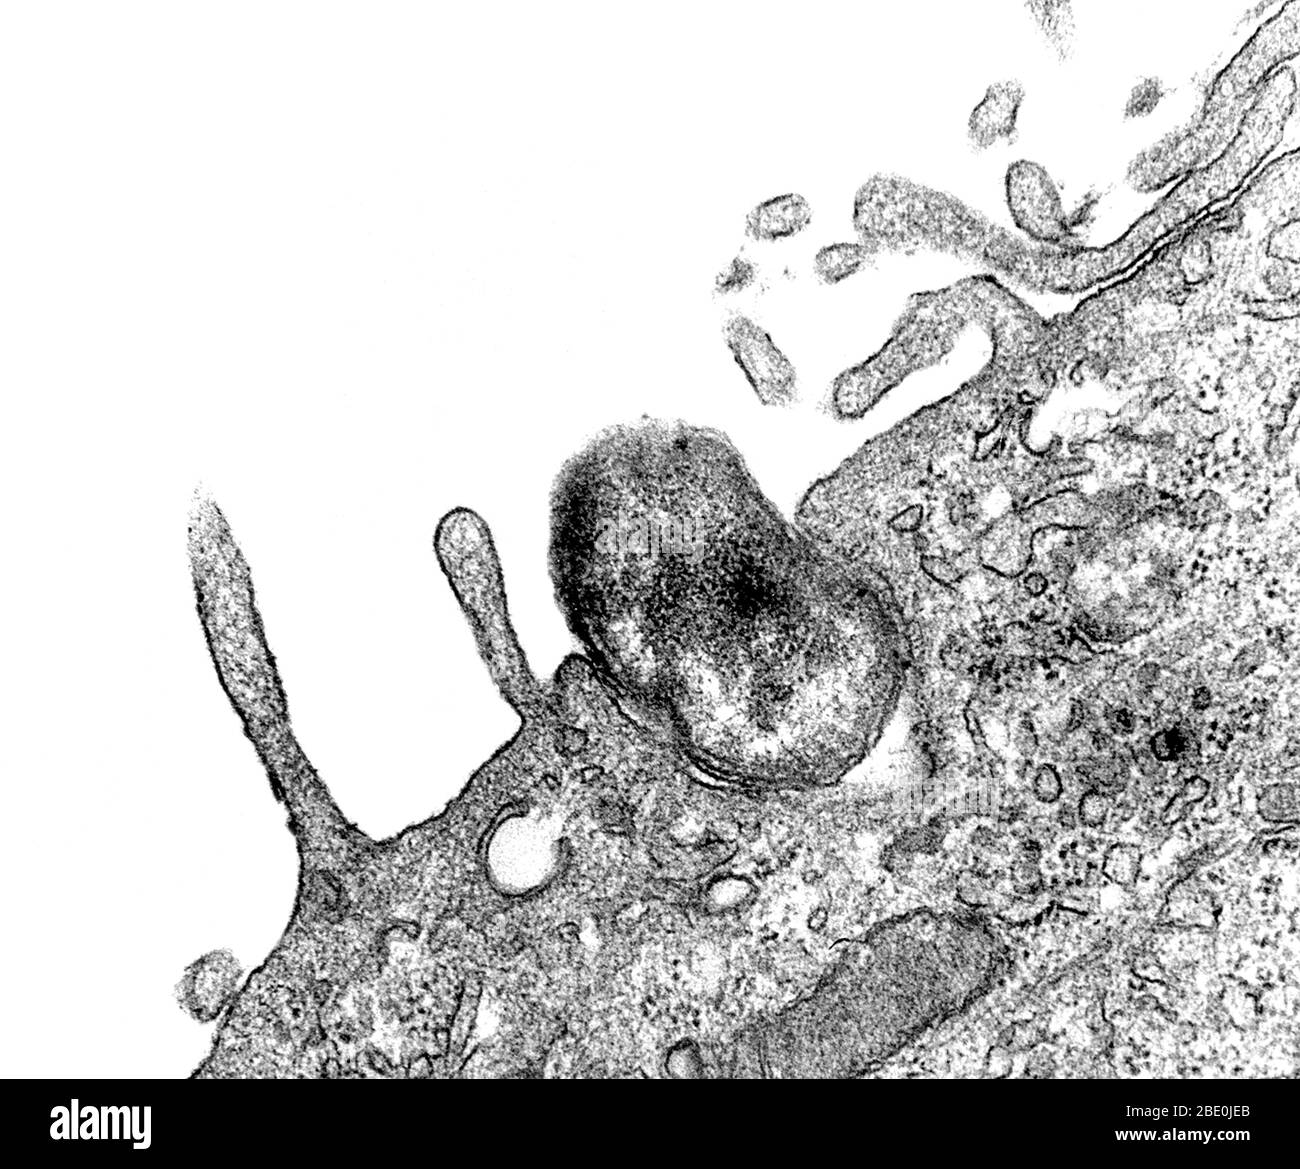 Imagen del microscopio electrónico de transmisión (TEM) capturada a medida  que se estaba llevando a cabo el proceso de fagocitosis. Aquí, usted puede ver  como una bacteria de Orientia tsutsugamushi, antes conocida